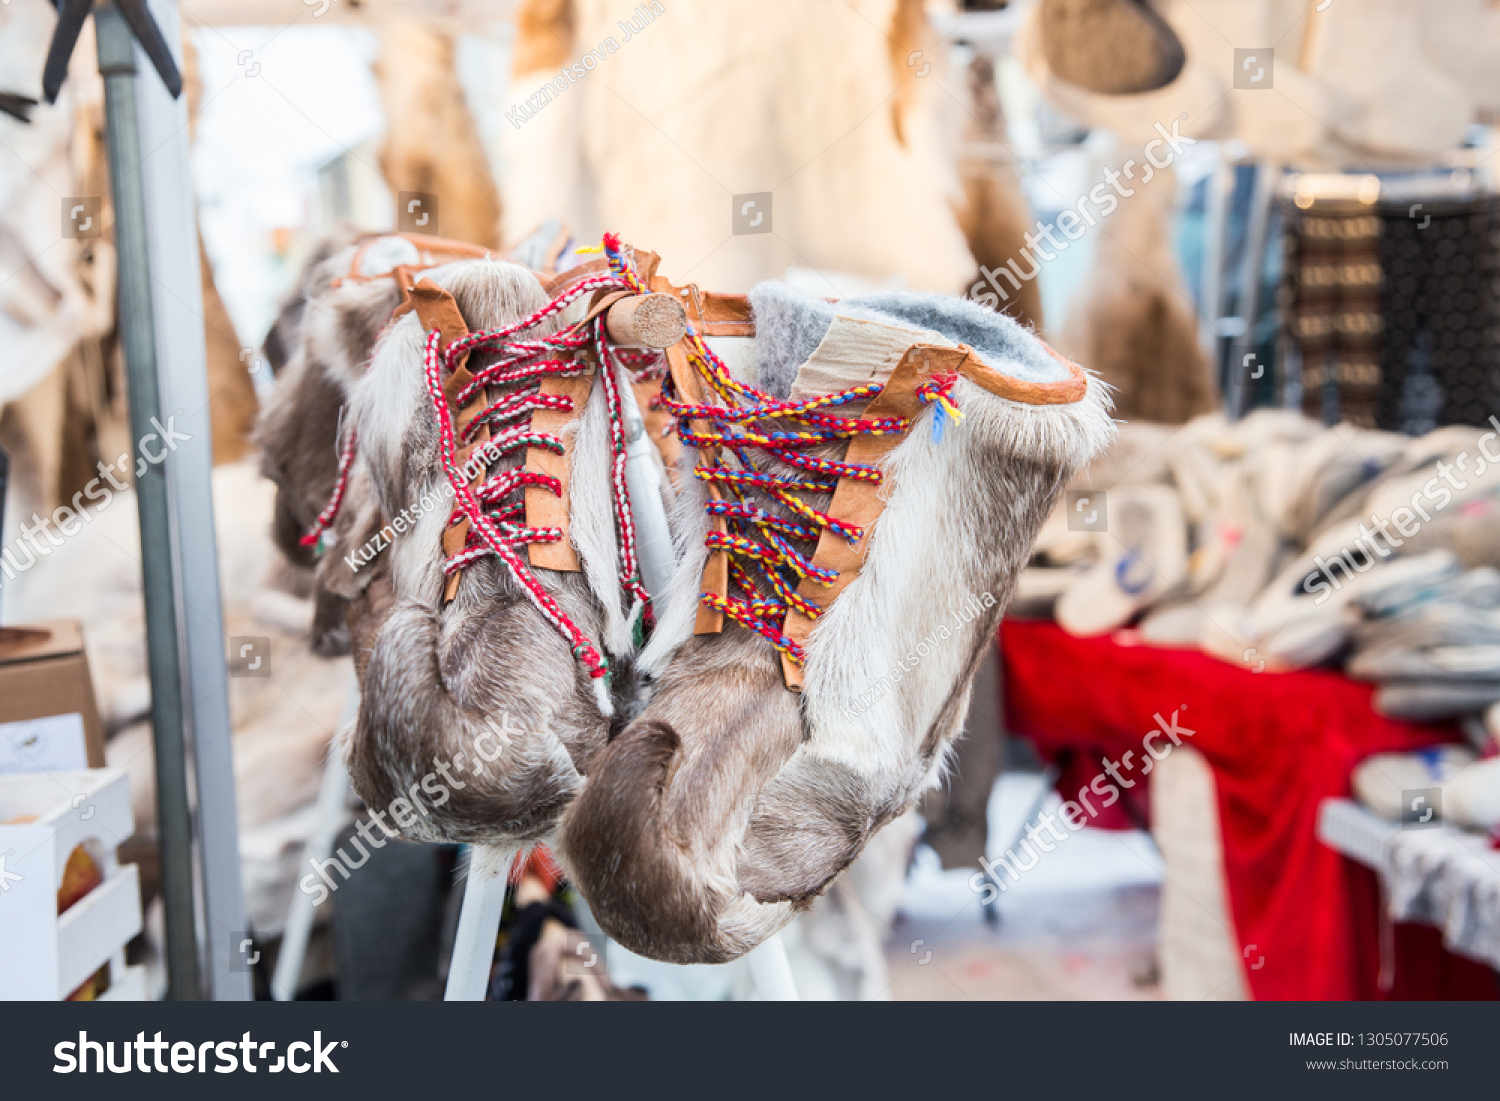 reindeer skin boots